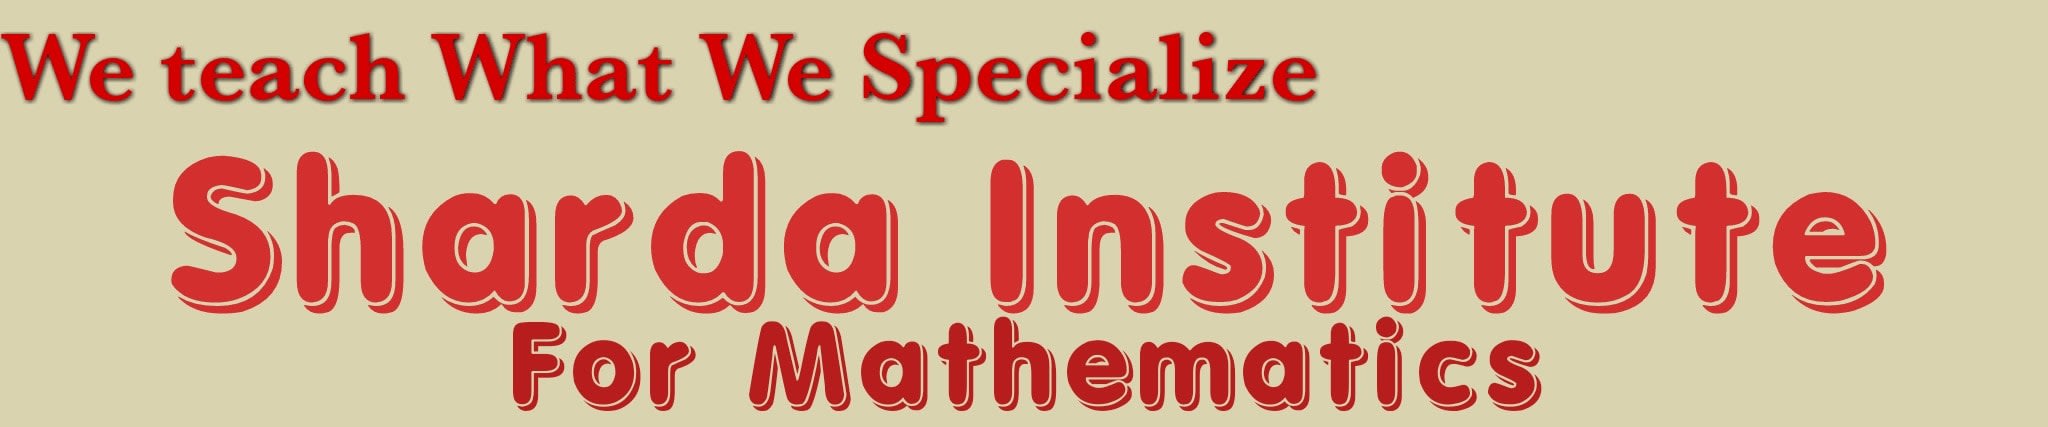 Sharda Institute Of Mathematics